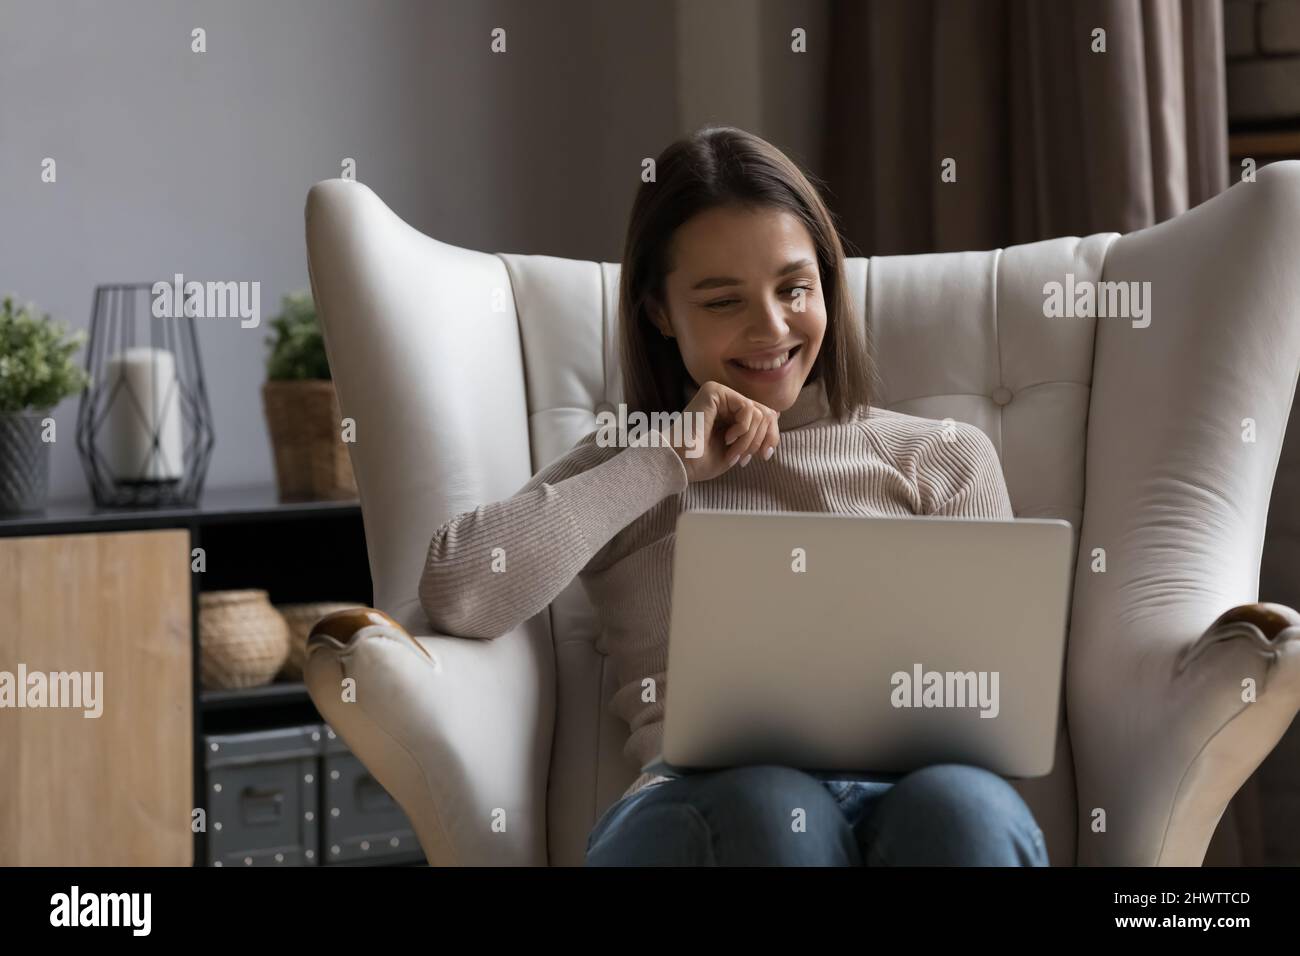 Une femme heureuse s'assoit dans un fauteuil confortable en regardant un ordinateur portable Banque D'Images